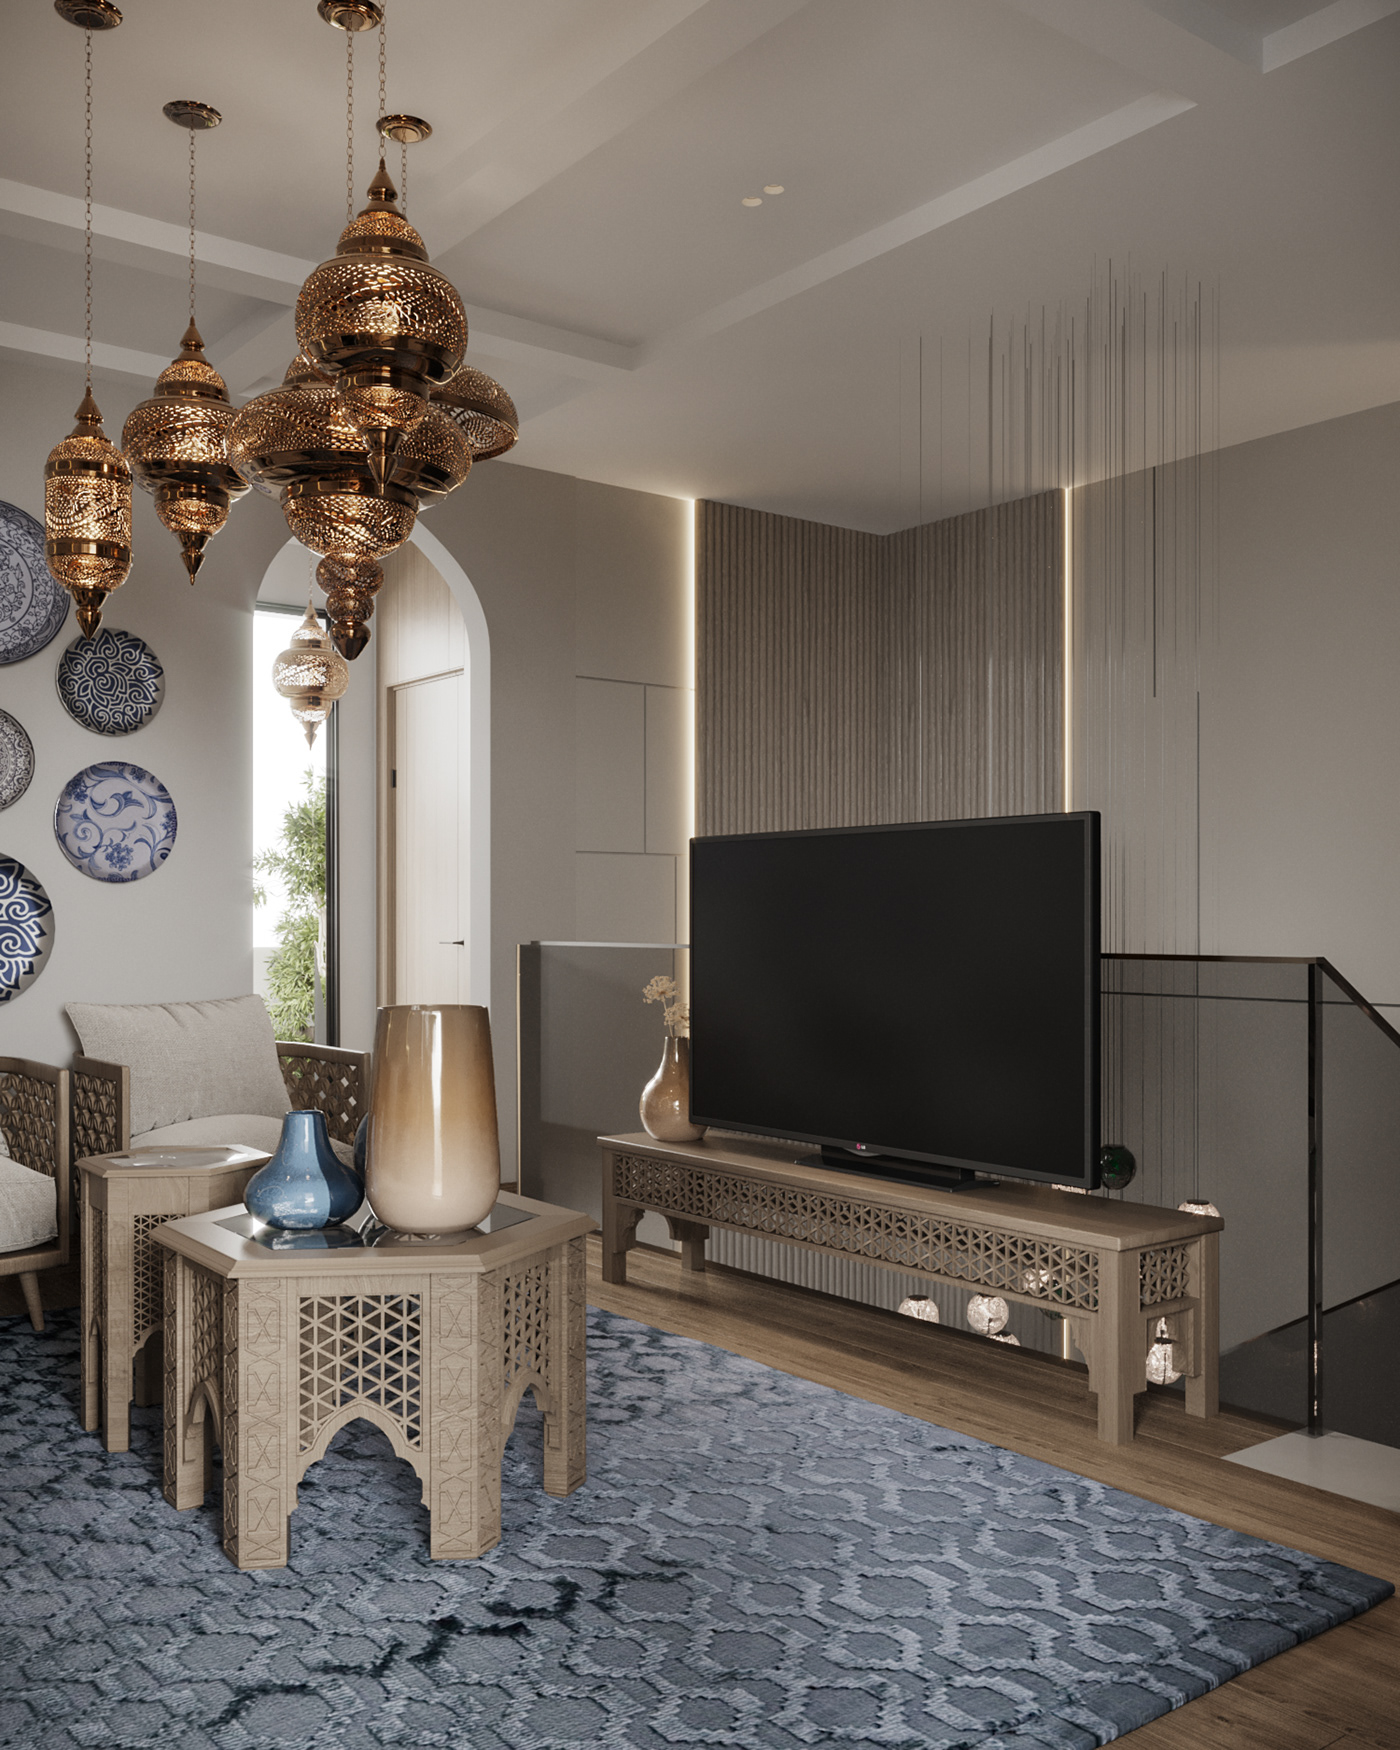 Interior visualization architecture interior design  corona islamic design sofa living room 3ds max